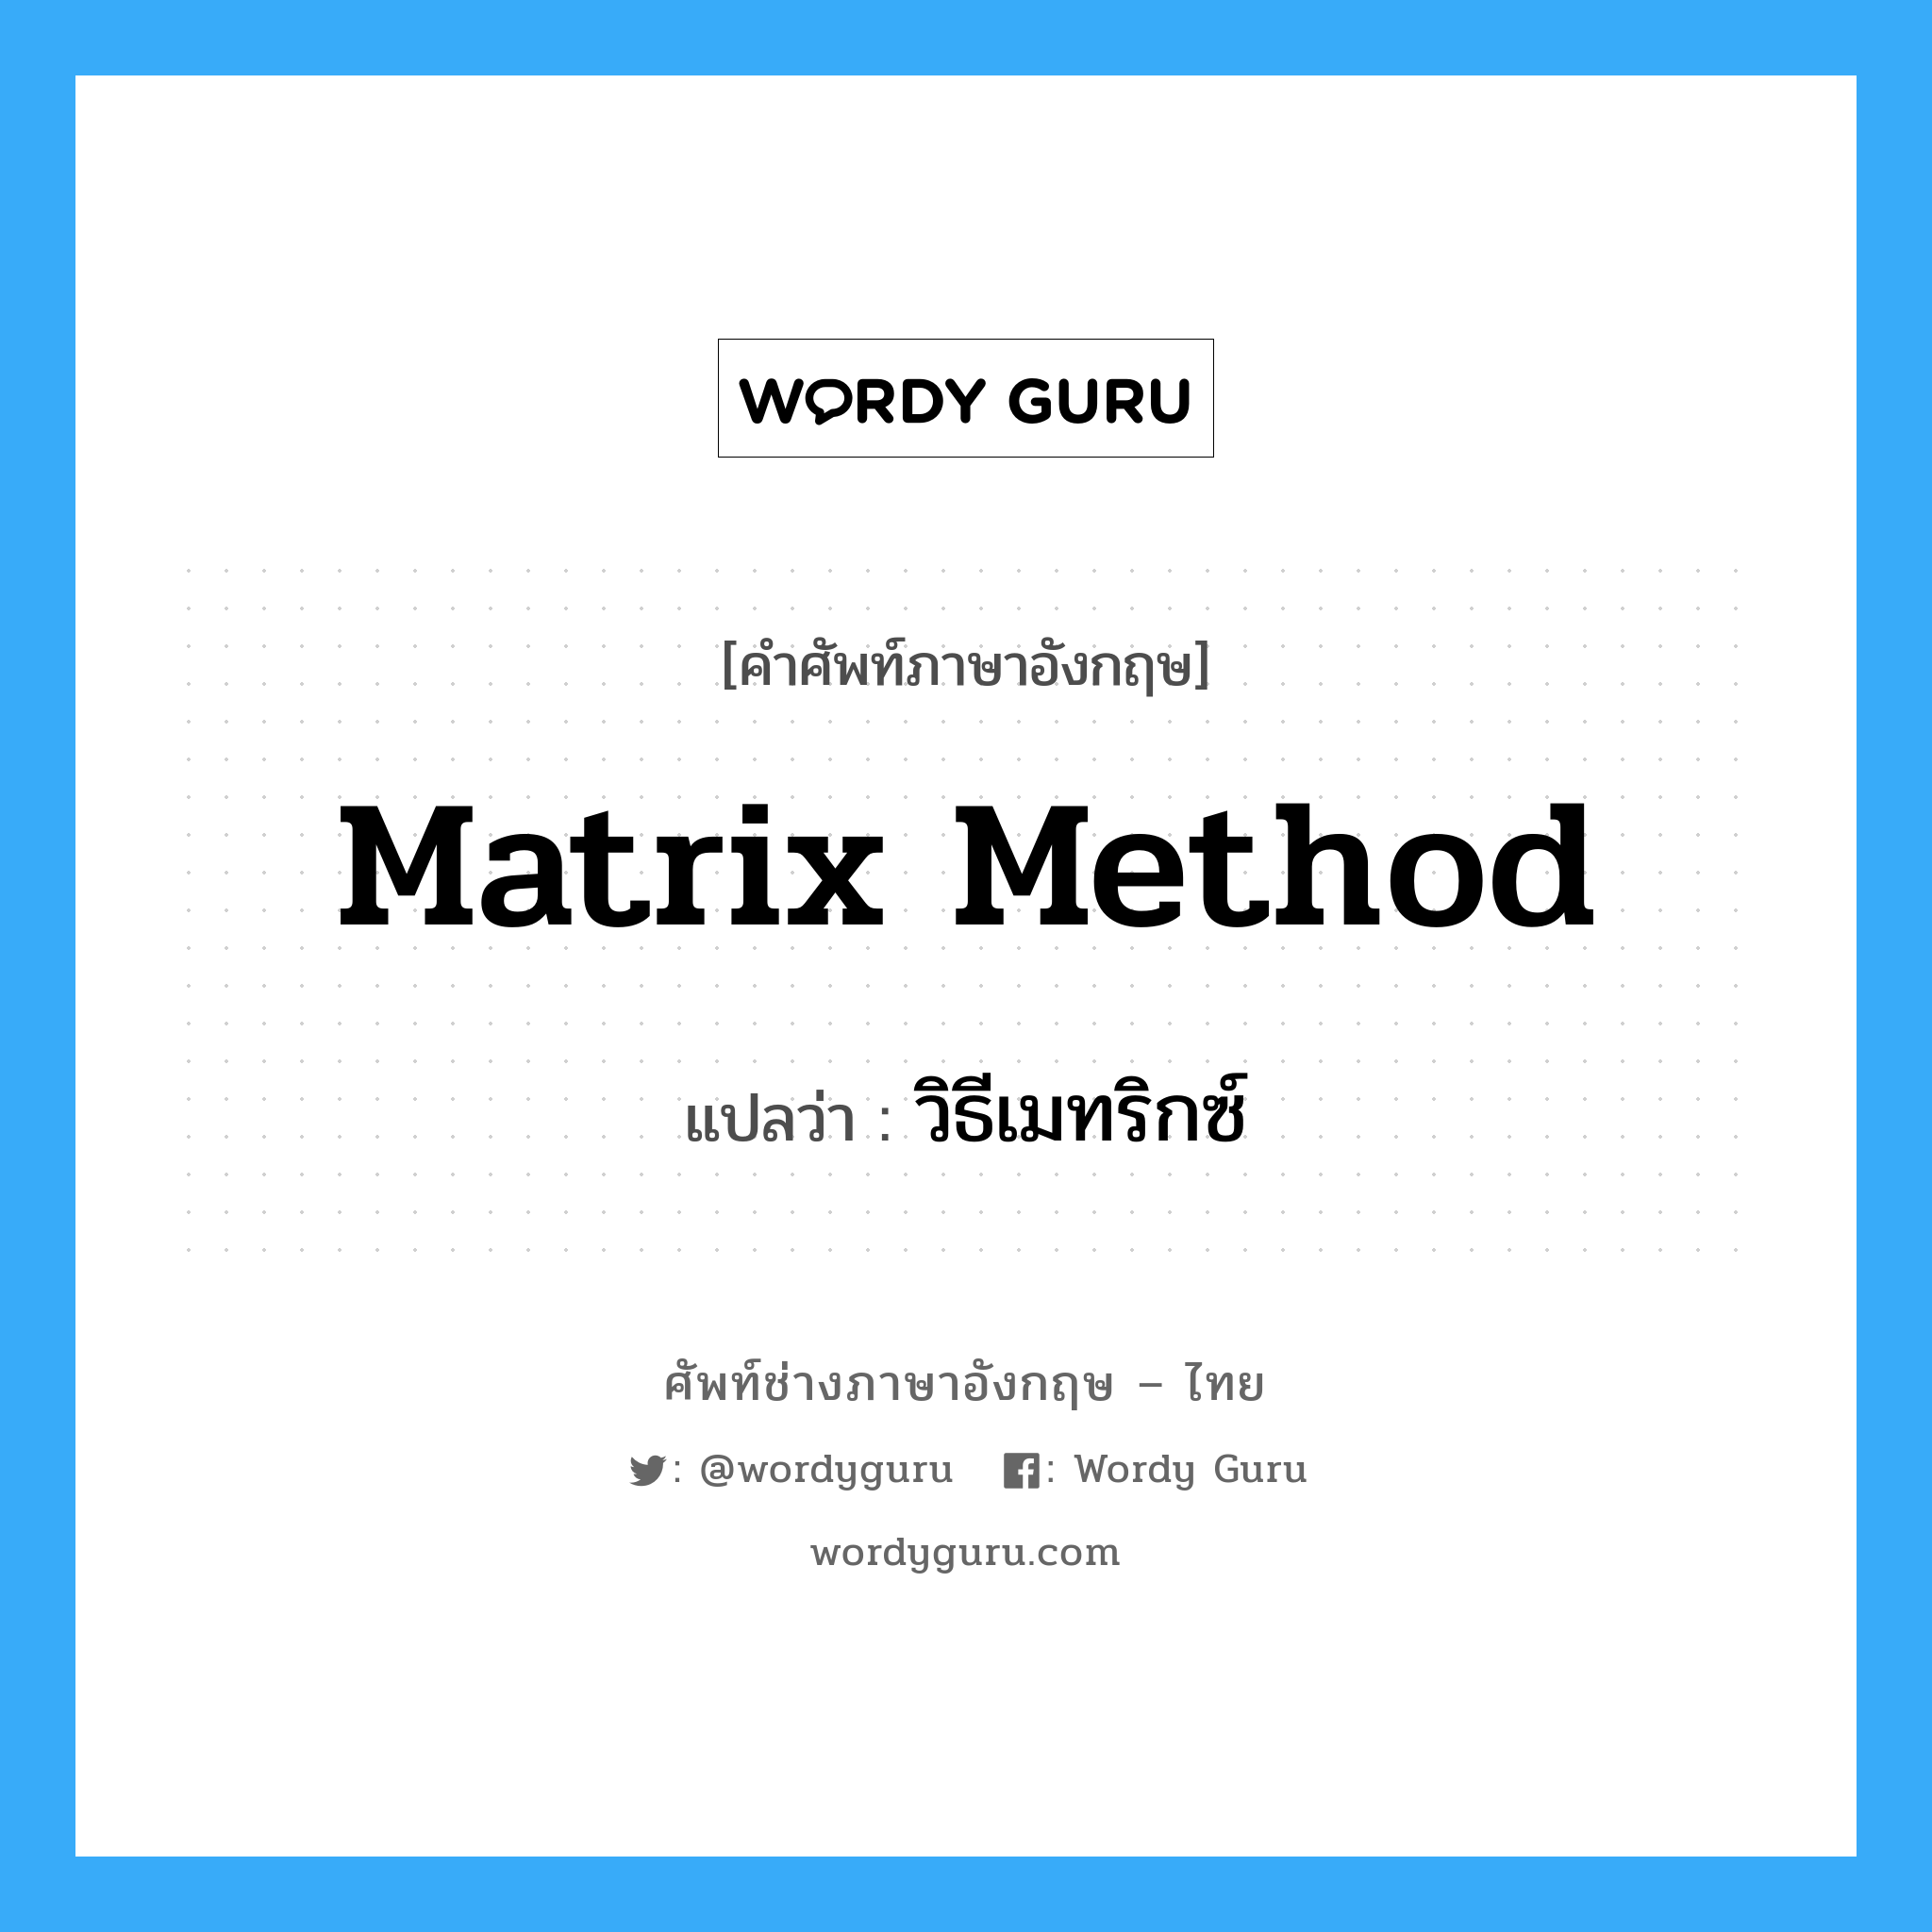 วิธีเมทริกซ์ ภาษาอังกฤษ?, คำศัพท์ช่างภาษาอังกฤษ - ไทย วิธีเมทริกซ์ คำศัพท์ภาษาอังกฤษ วิธีเมทริกซ์ แปลว่า Matrix Method